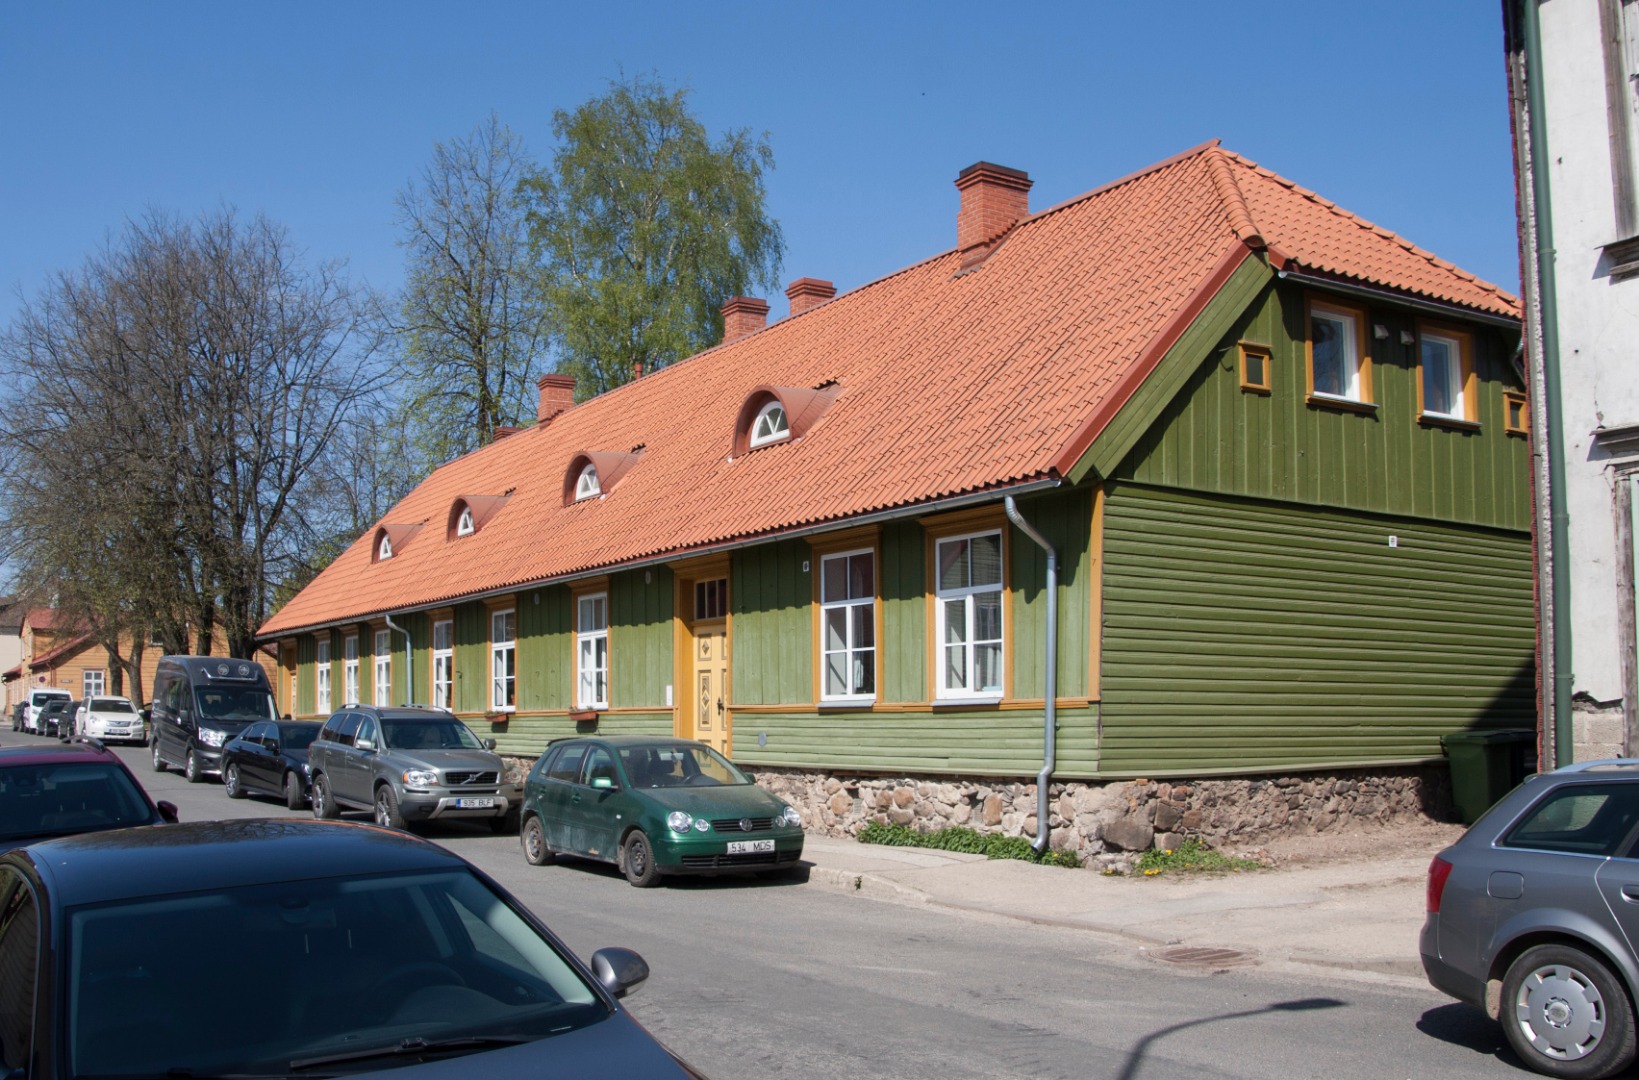 A. Kitzberg's residence in Viljandi (Posti t. 19), where he graduated from "Punga Märdi" rephoto